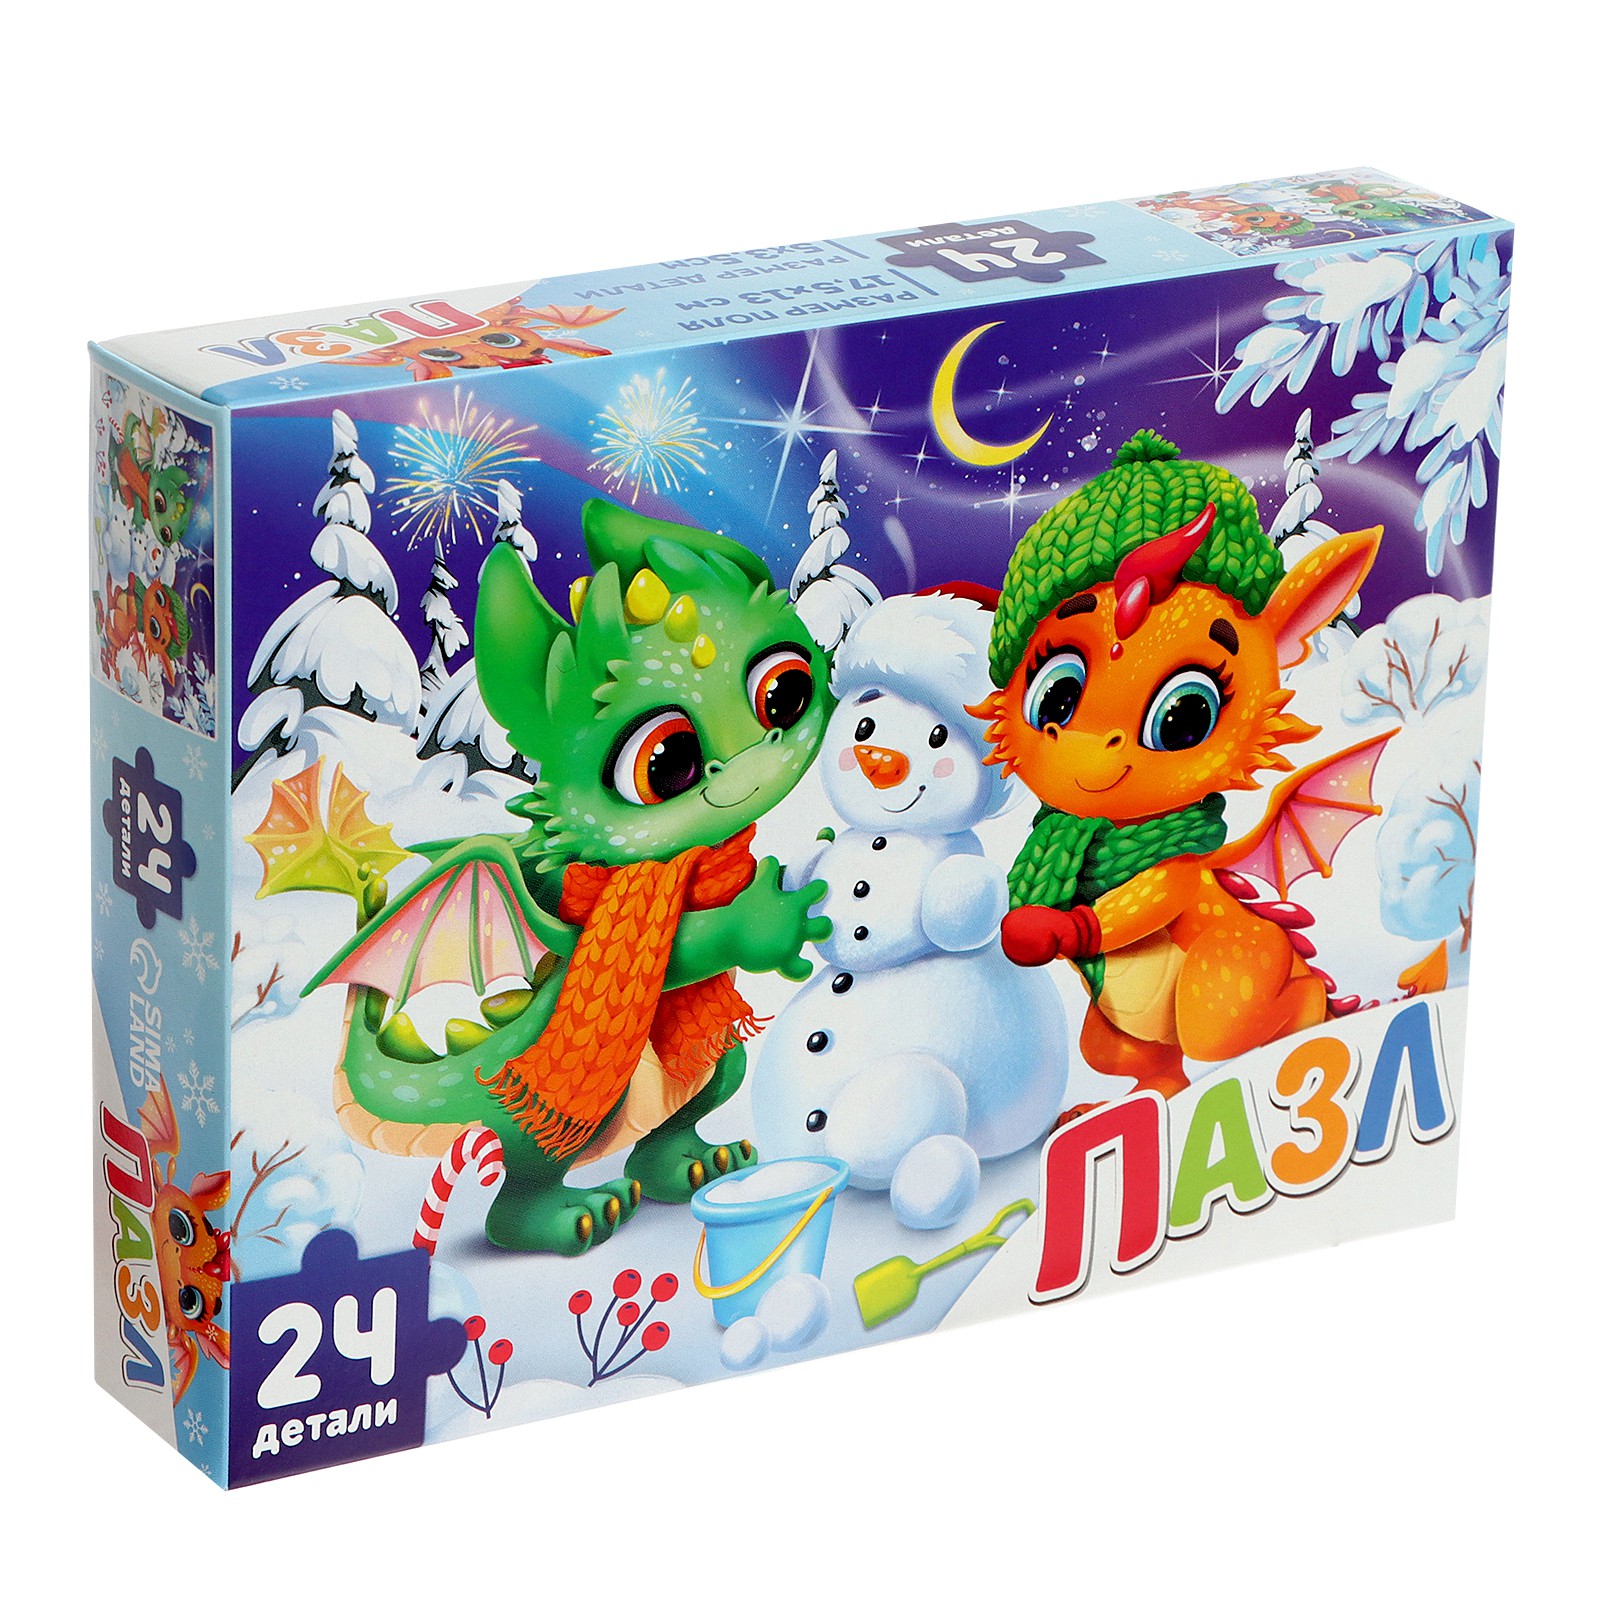 Пазл Puzzle Time «Новогодние забавы дракончиков» 24 элемента большая коробка - фото 1